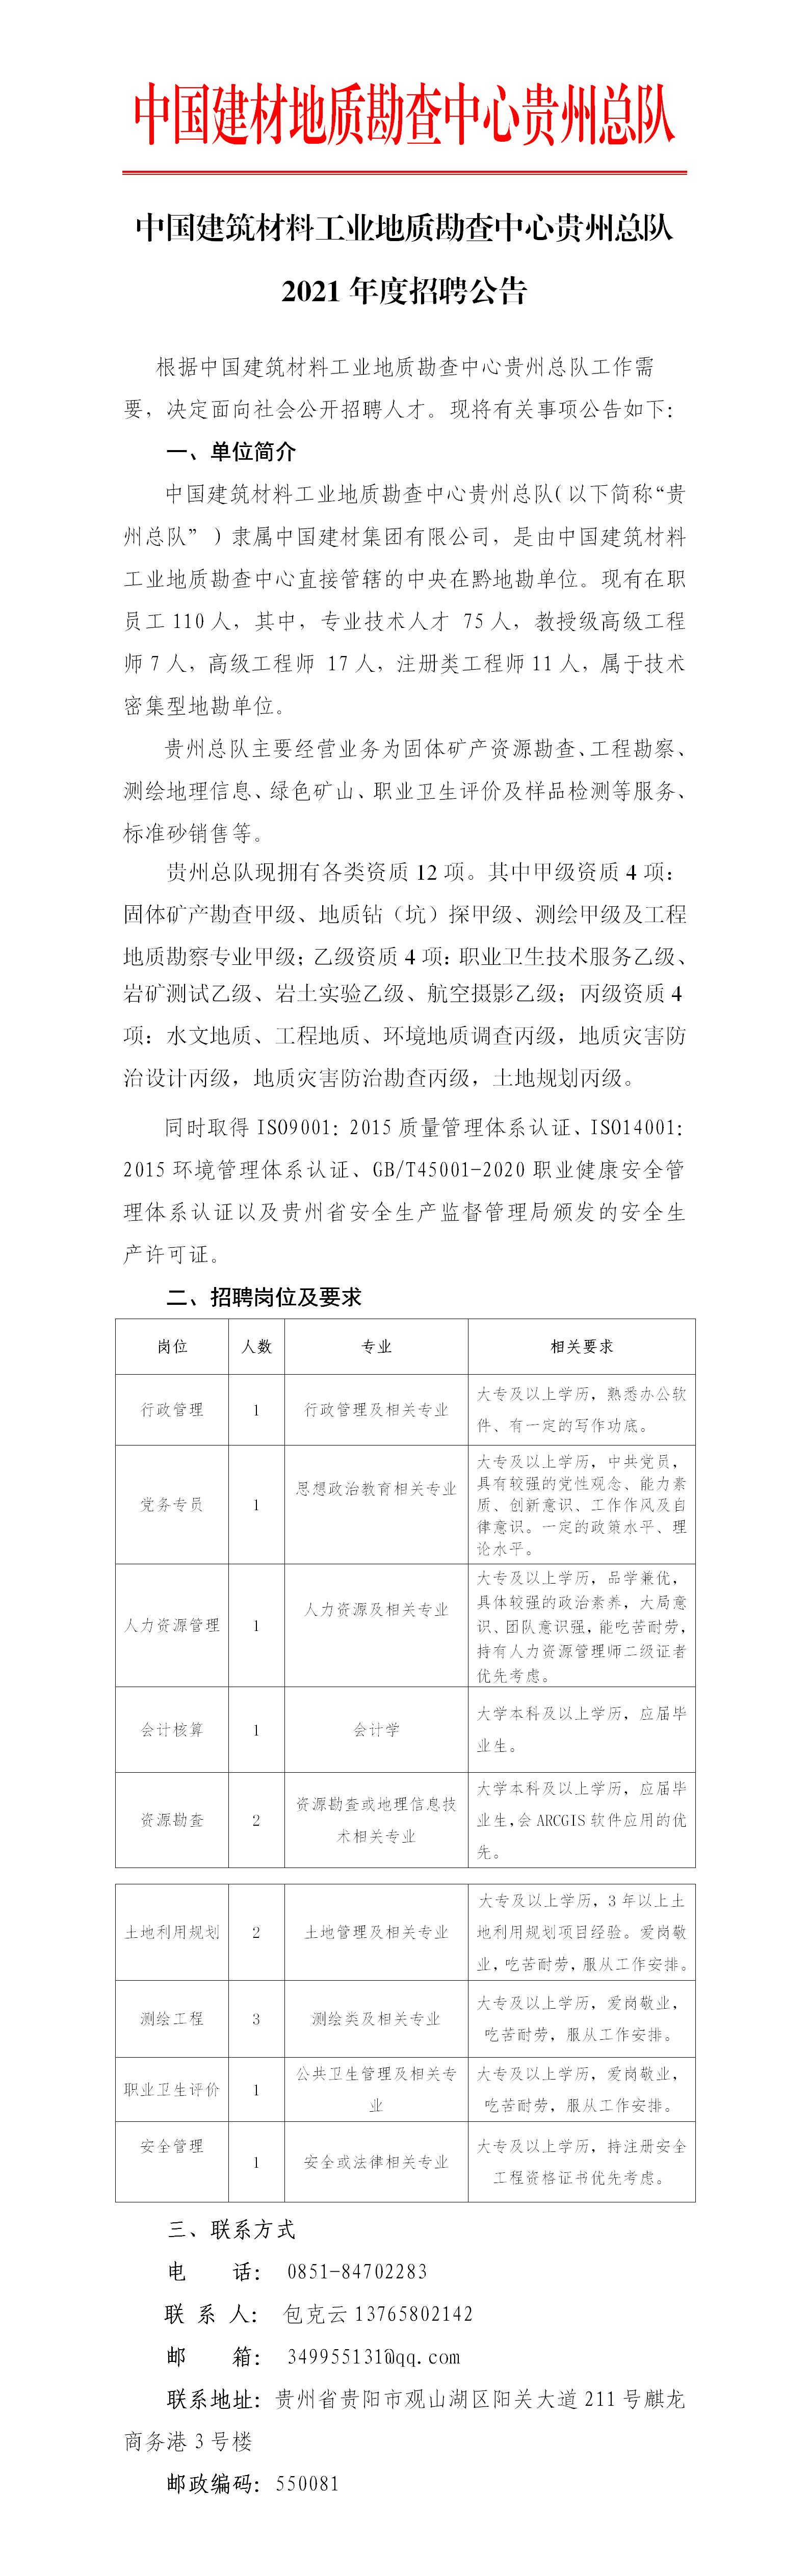 中国建筑材料工业地质勘查中心贵州总队招聘公告 (2) (2) (3).jpg